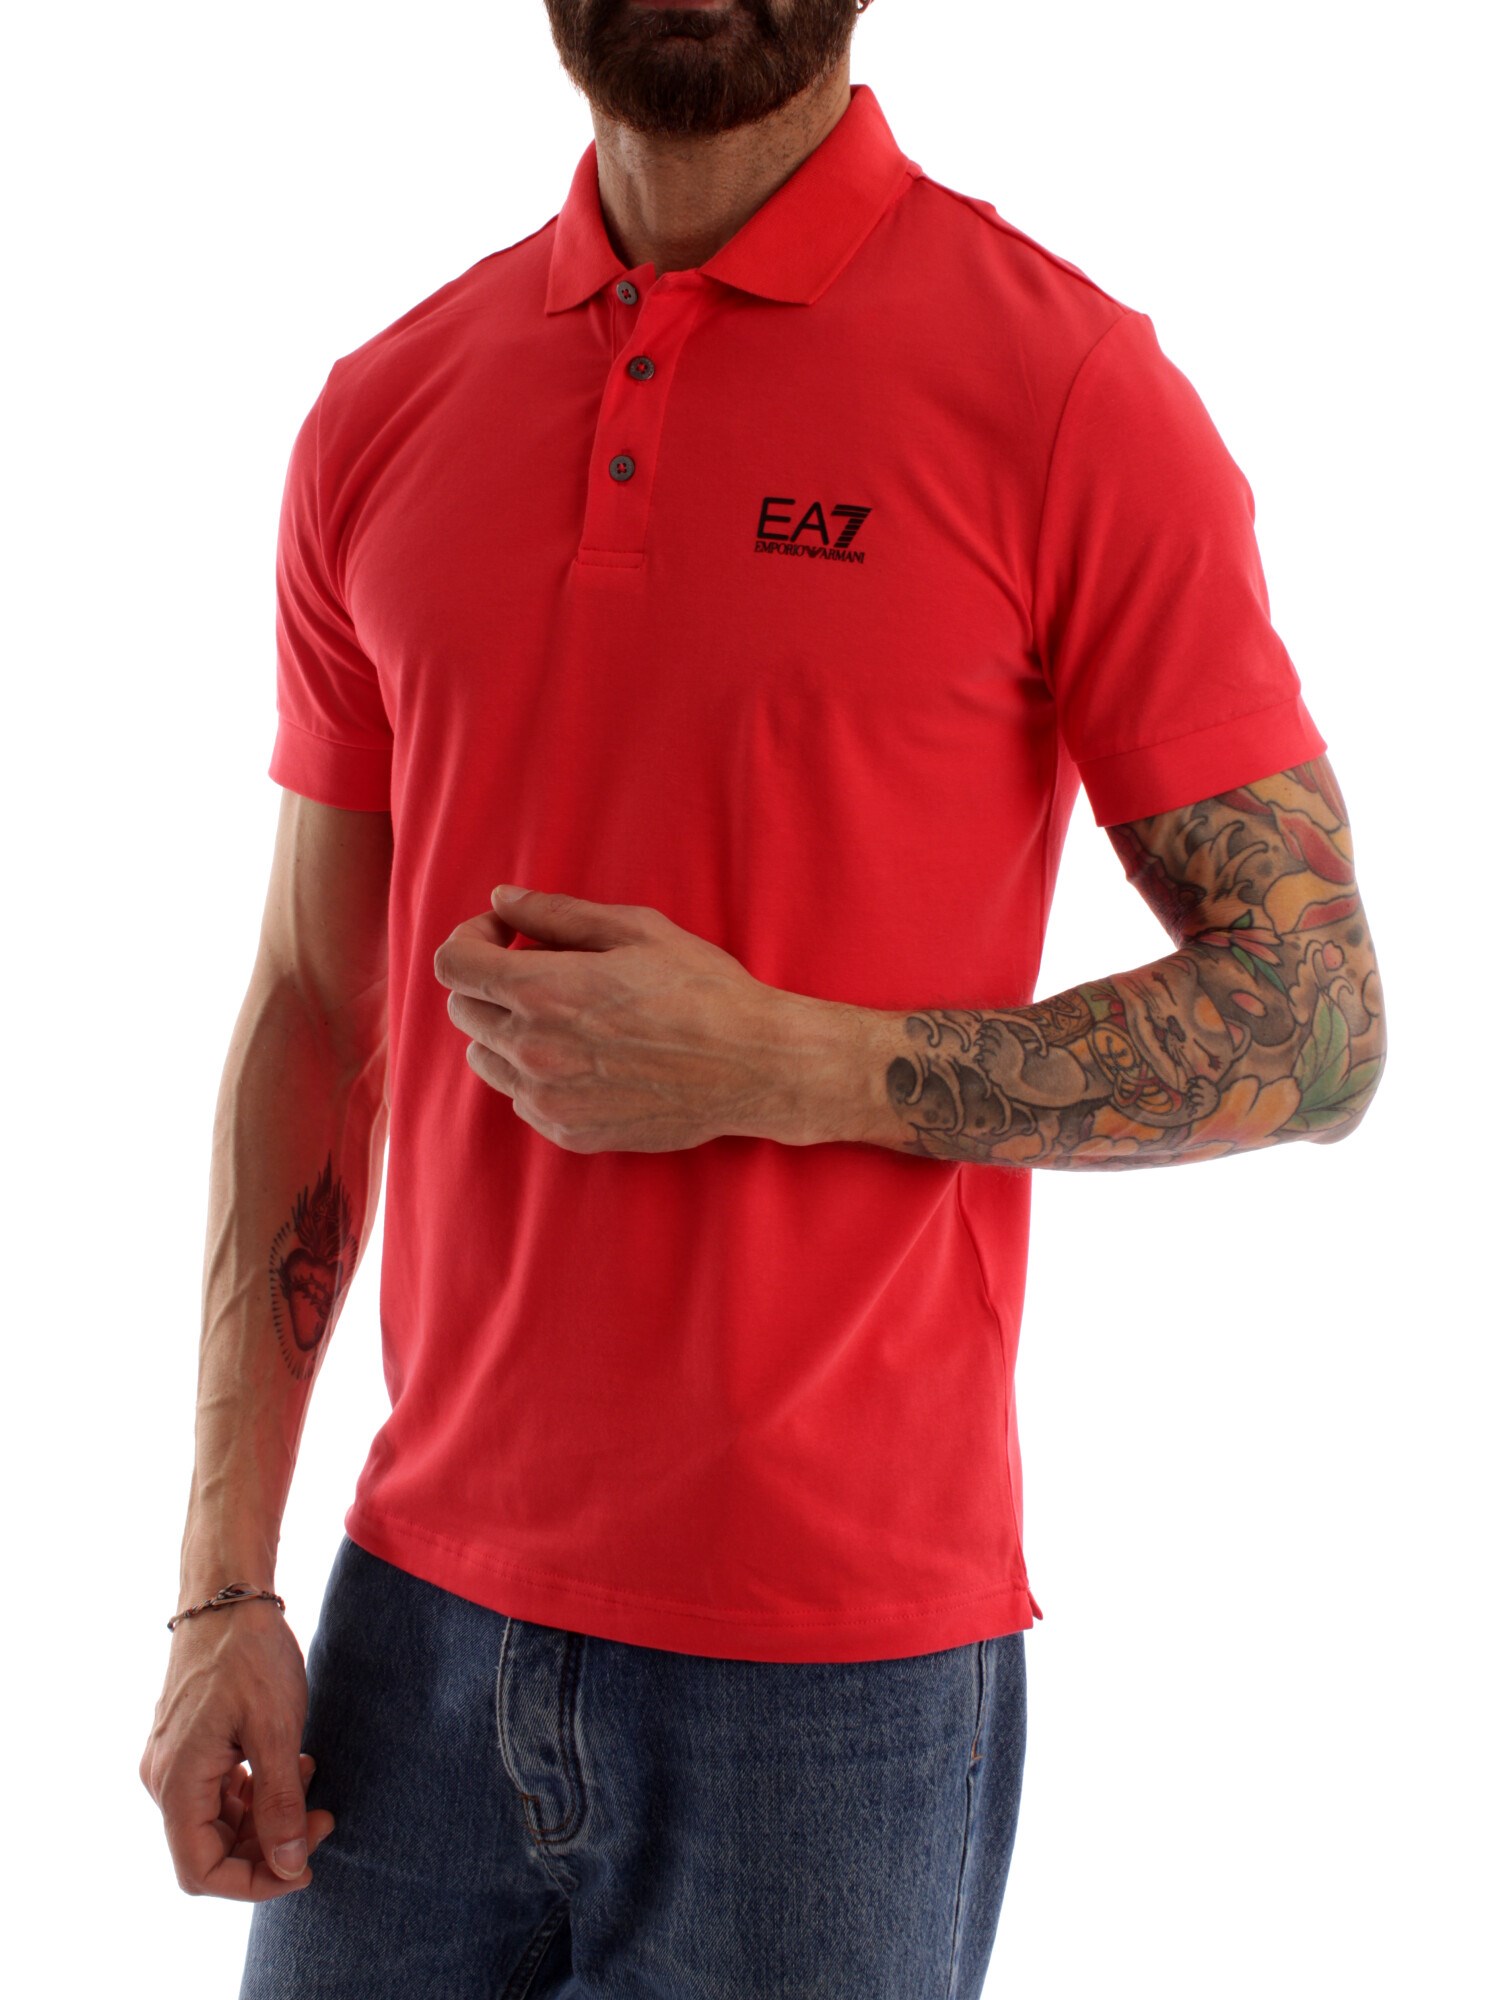 Ea7 8NPF04 RED Clothing Man